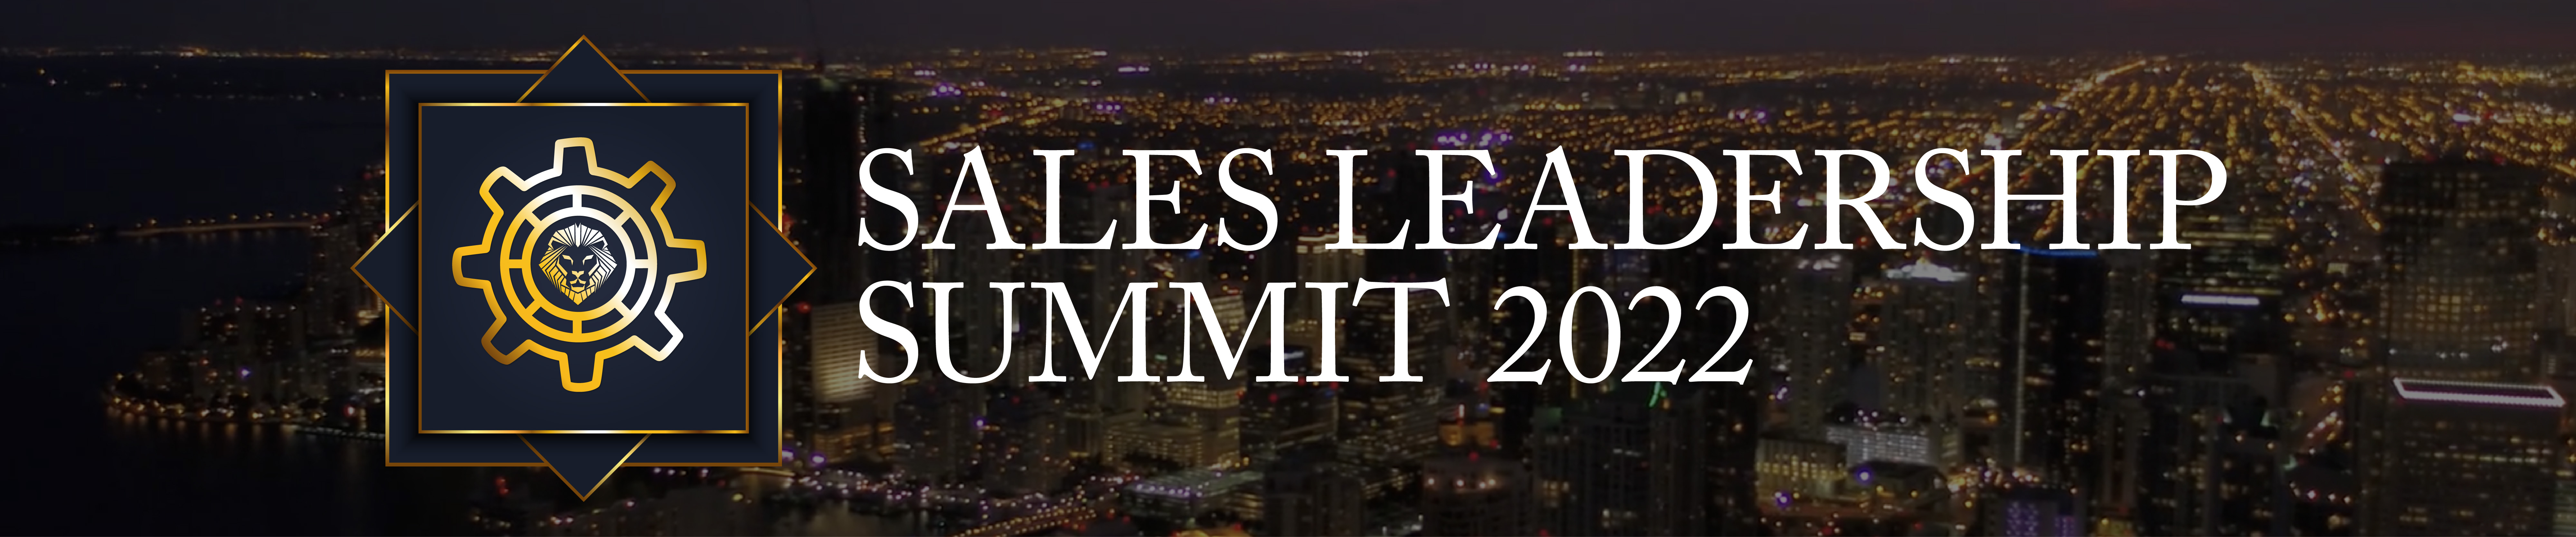 Sales Leadership Summit 2022